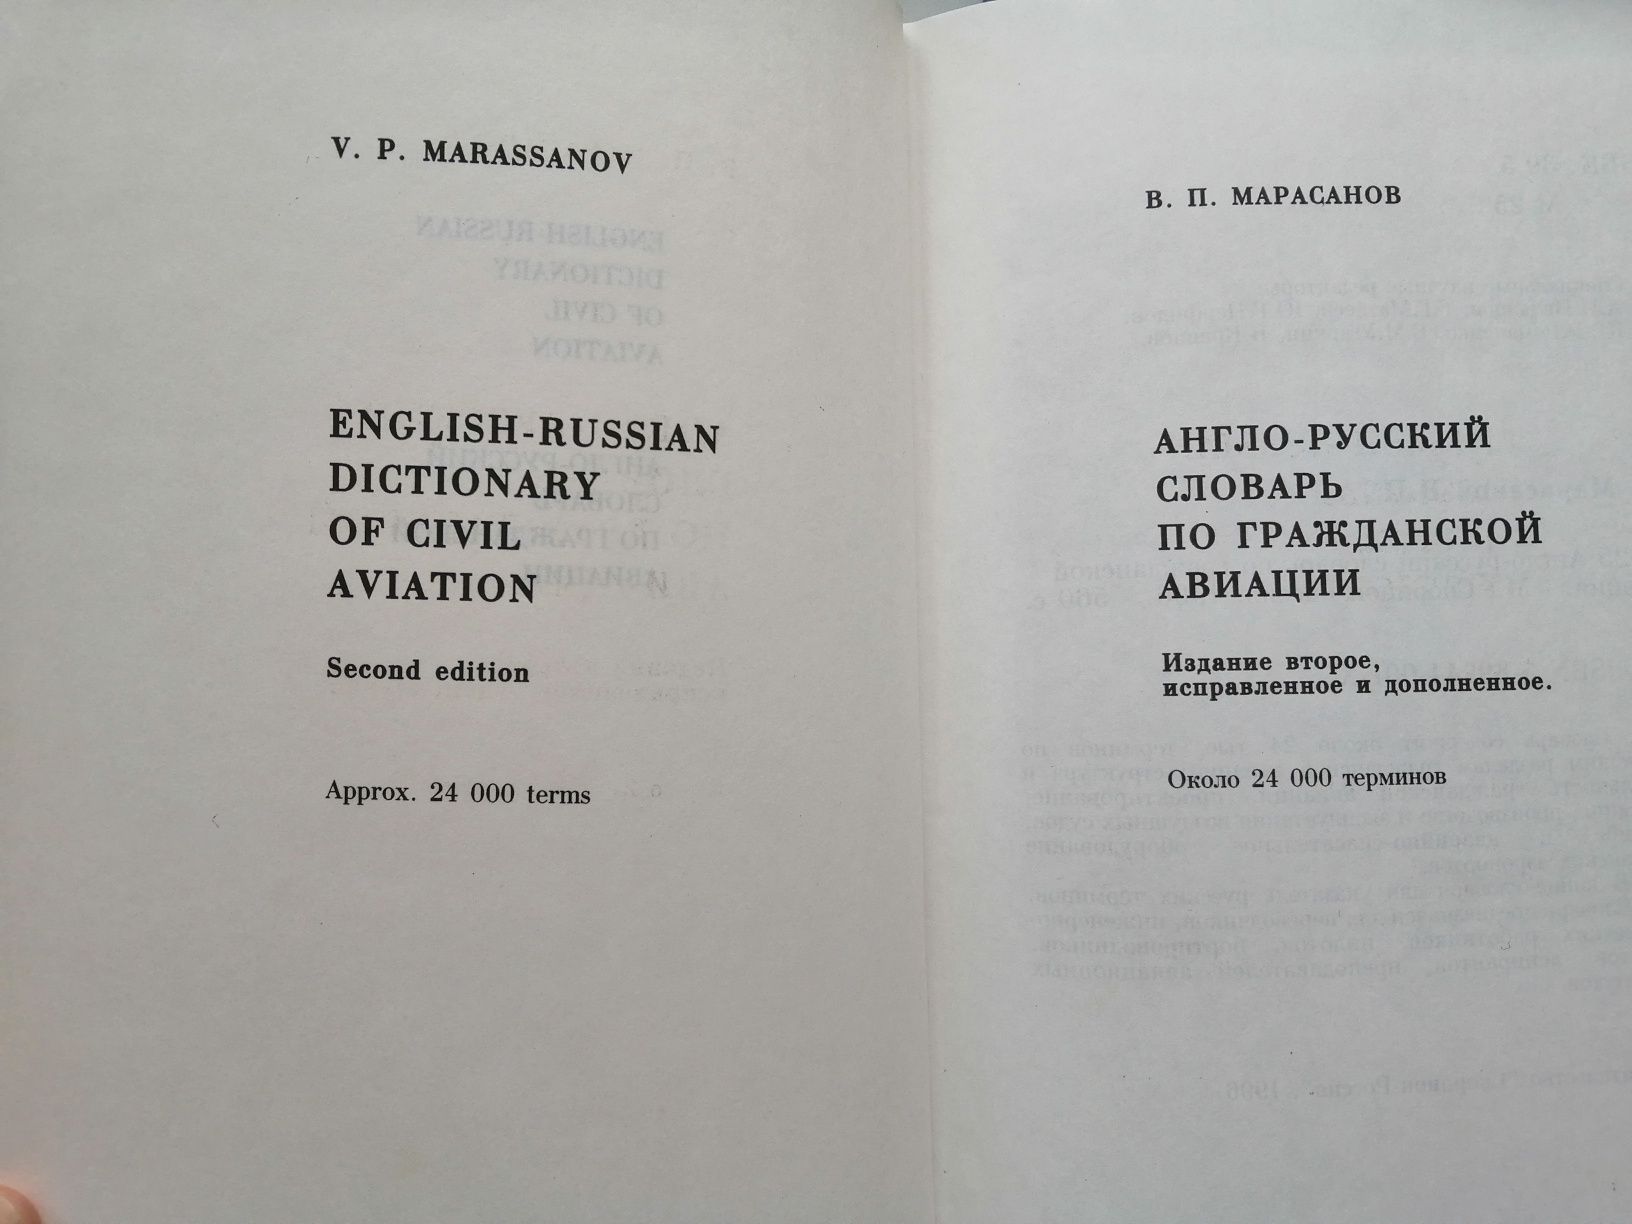 Український словник, Гюго, Civil aviation, Аэропор